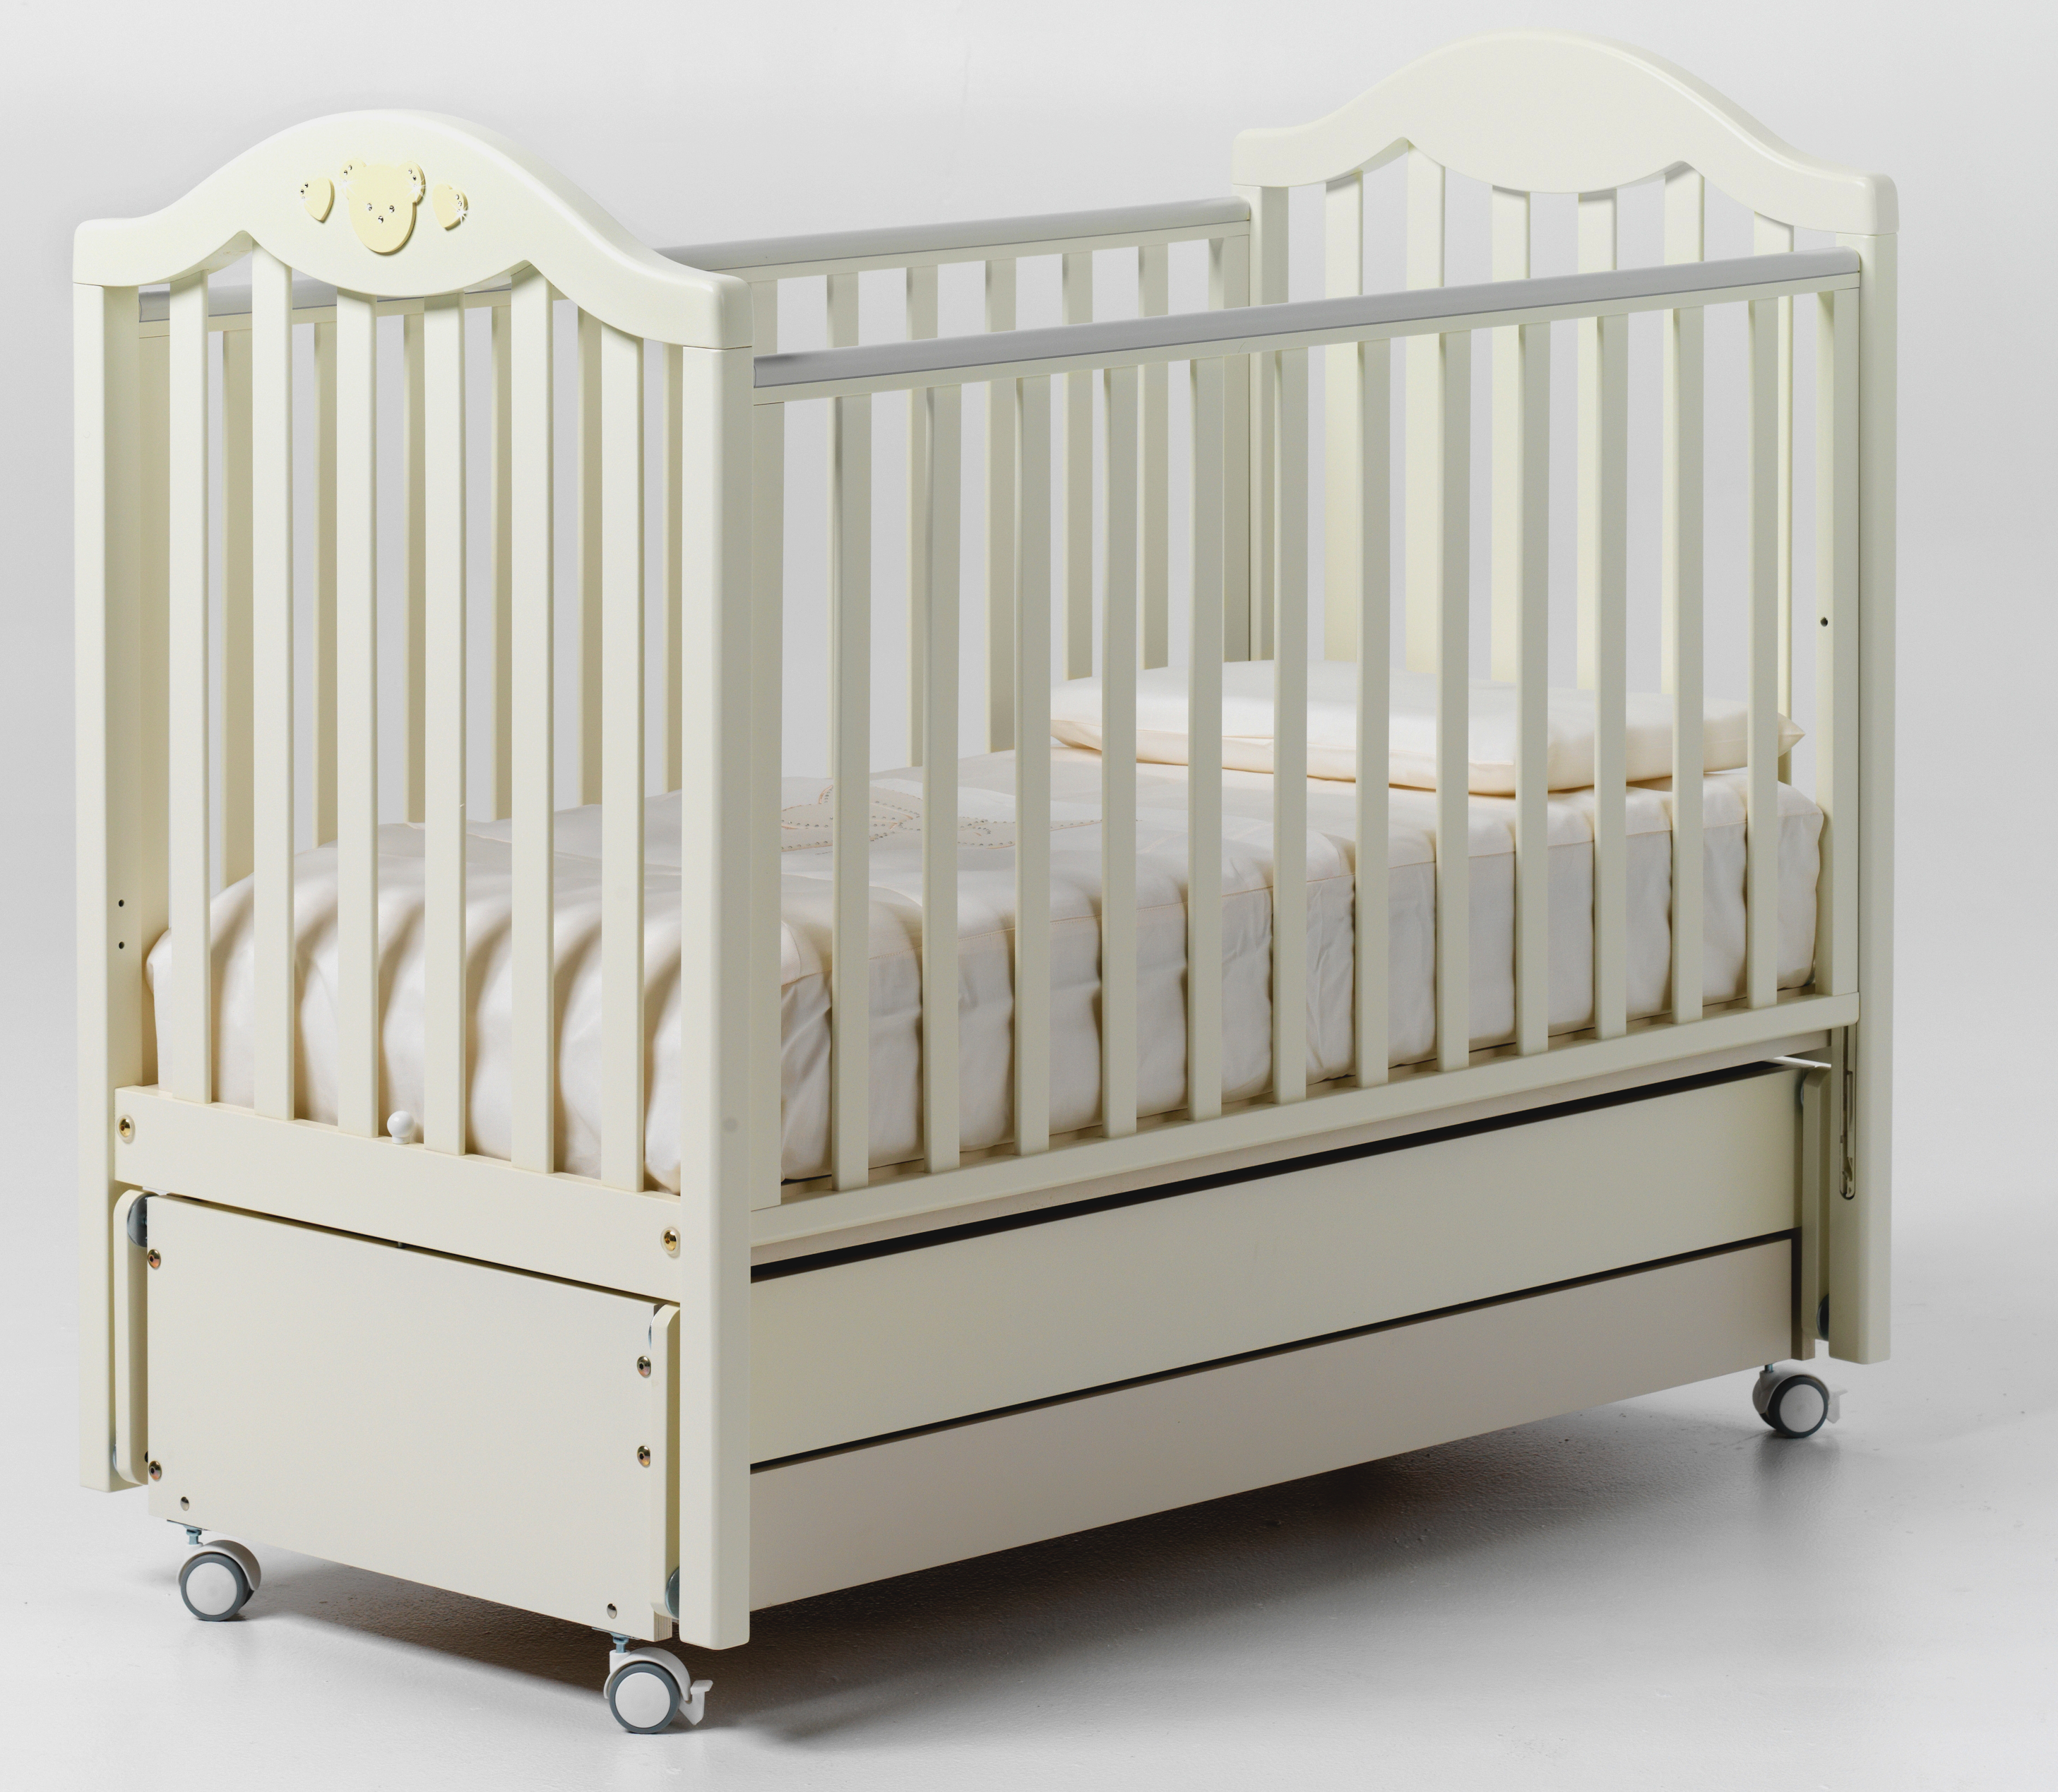 детская кровать baby italia